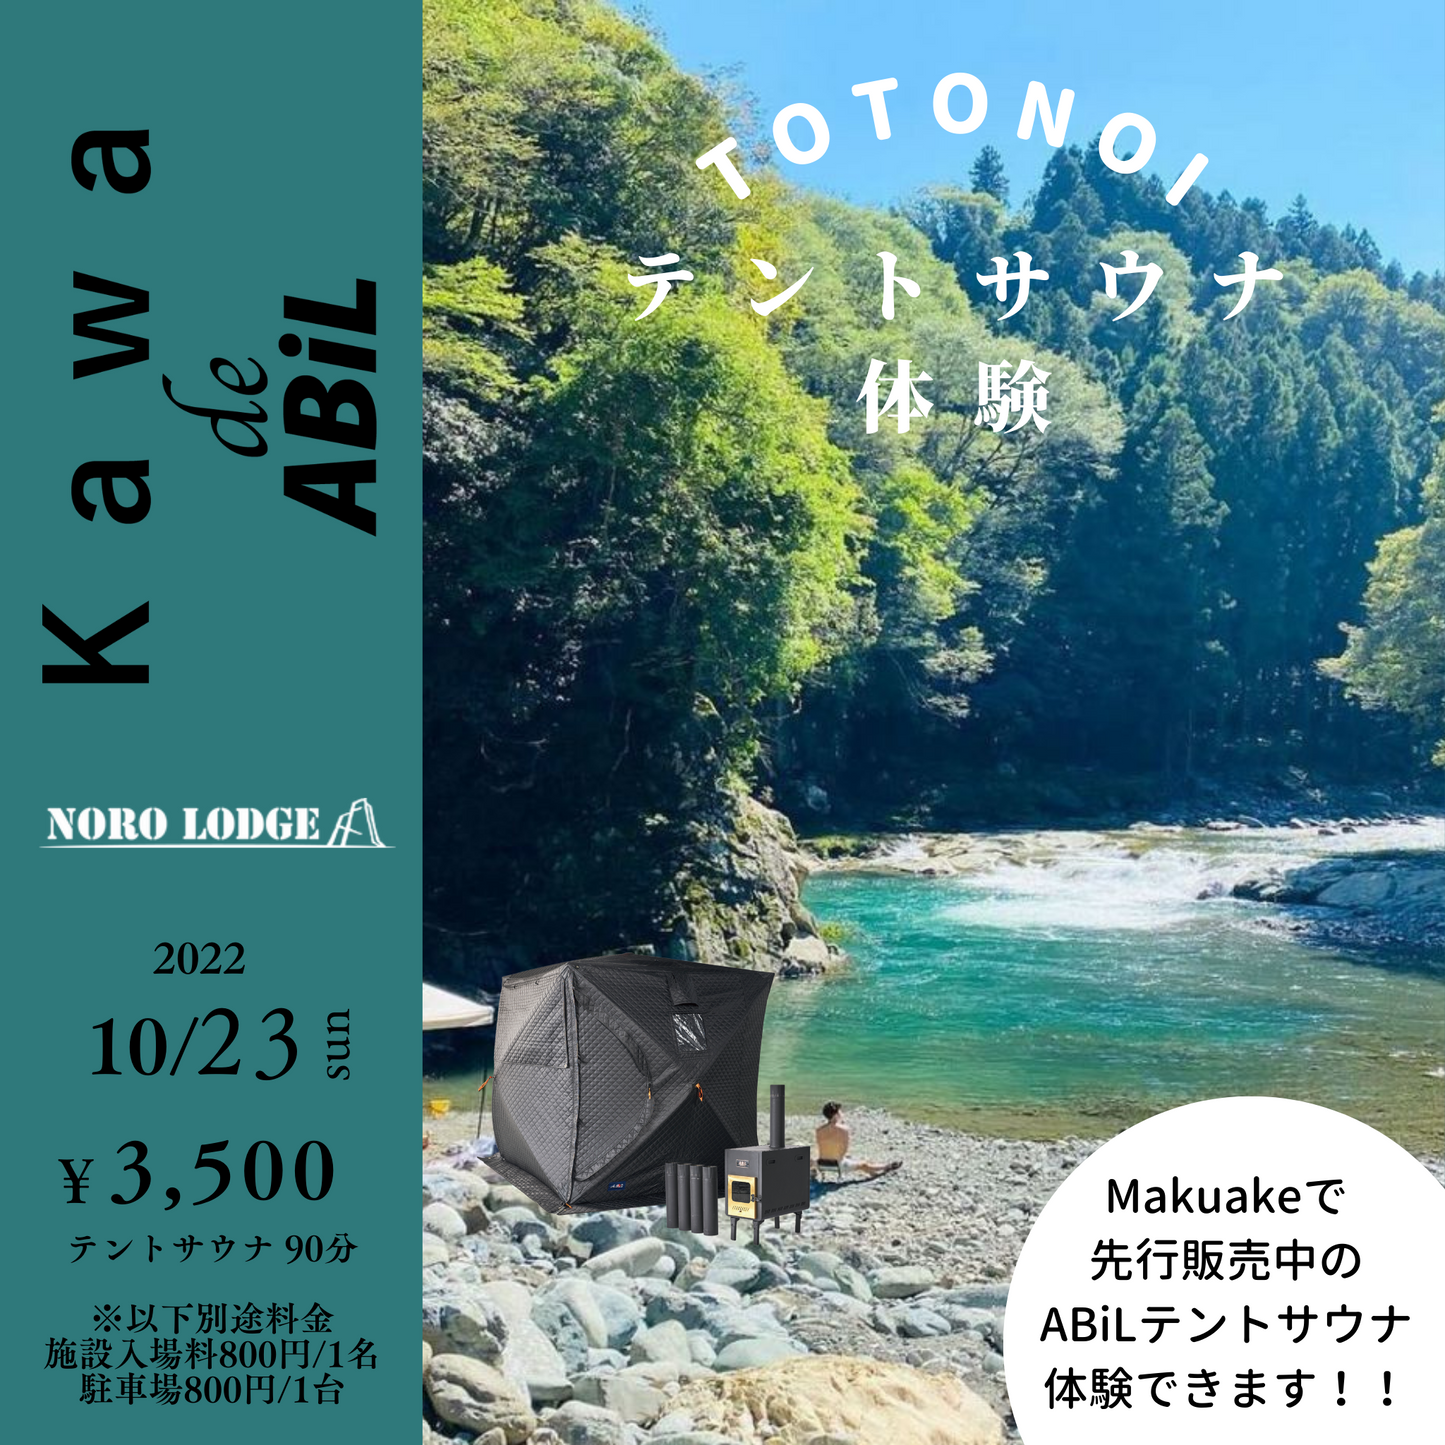 10/23(日) Kawa de ABiL 体験イベント【イベント予約】